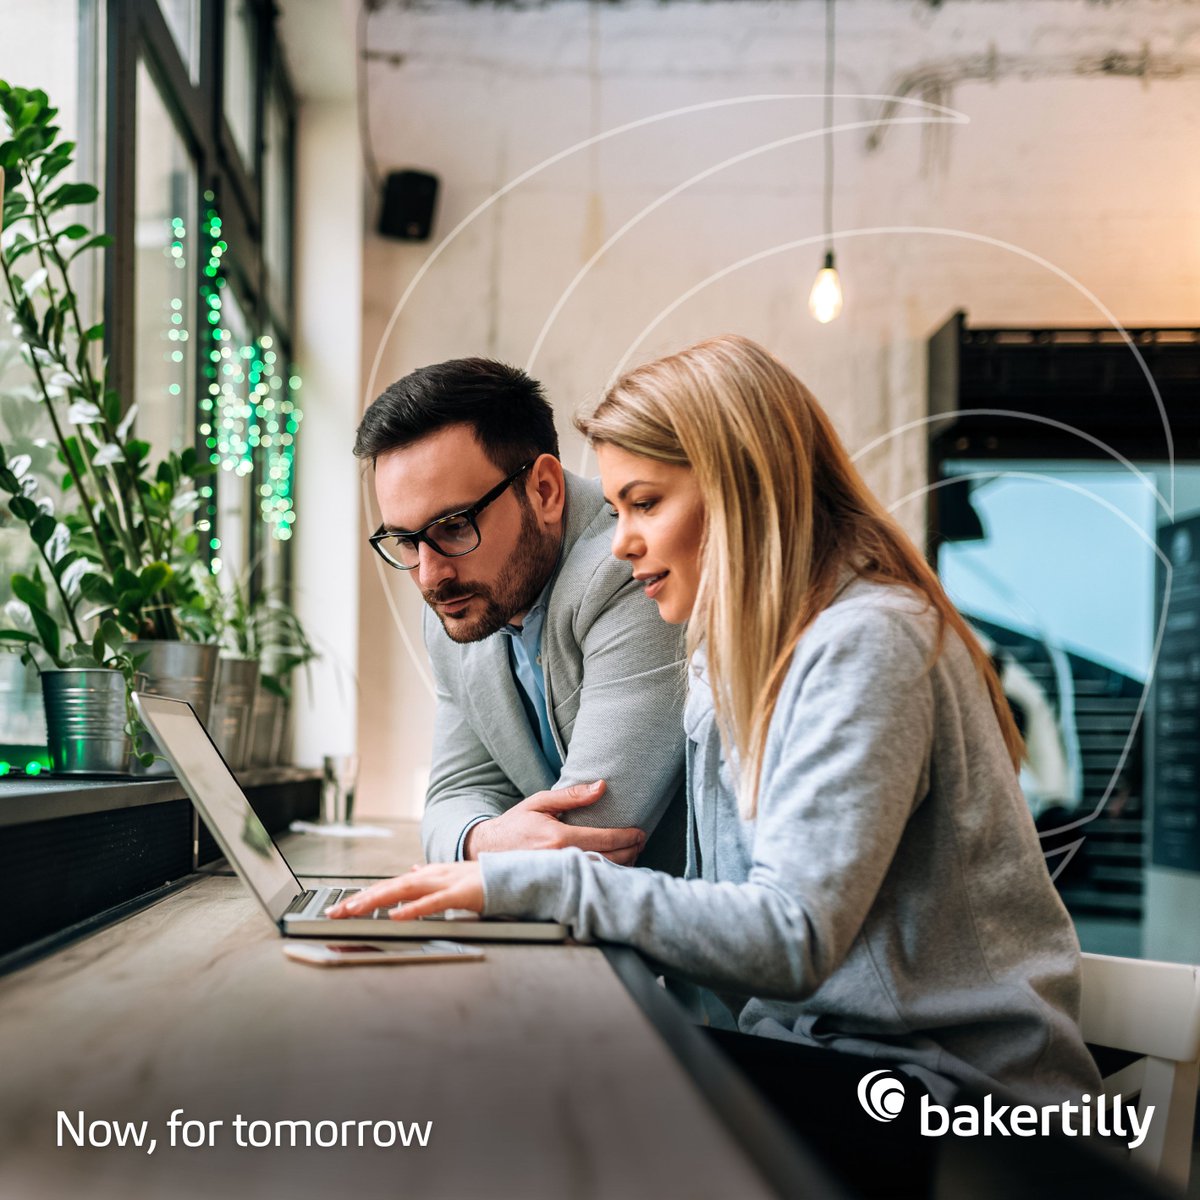 Cuando elige trabajar con una firma miembro de Baker Tilly, elige una empresa que cree en el poder de las grandes relaciones, las grandes conversaciones y los grandes futuros.

#BakerTilly #NowForTomorrow